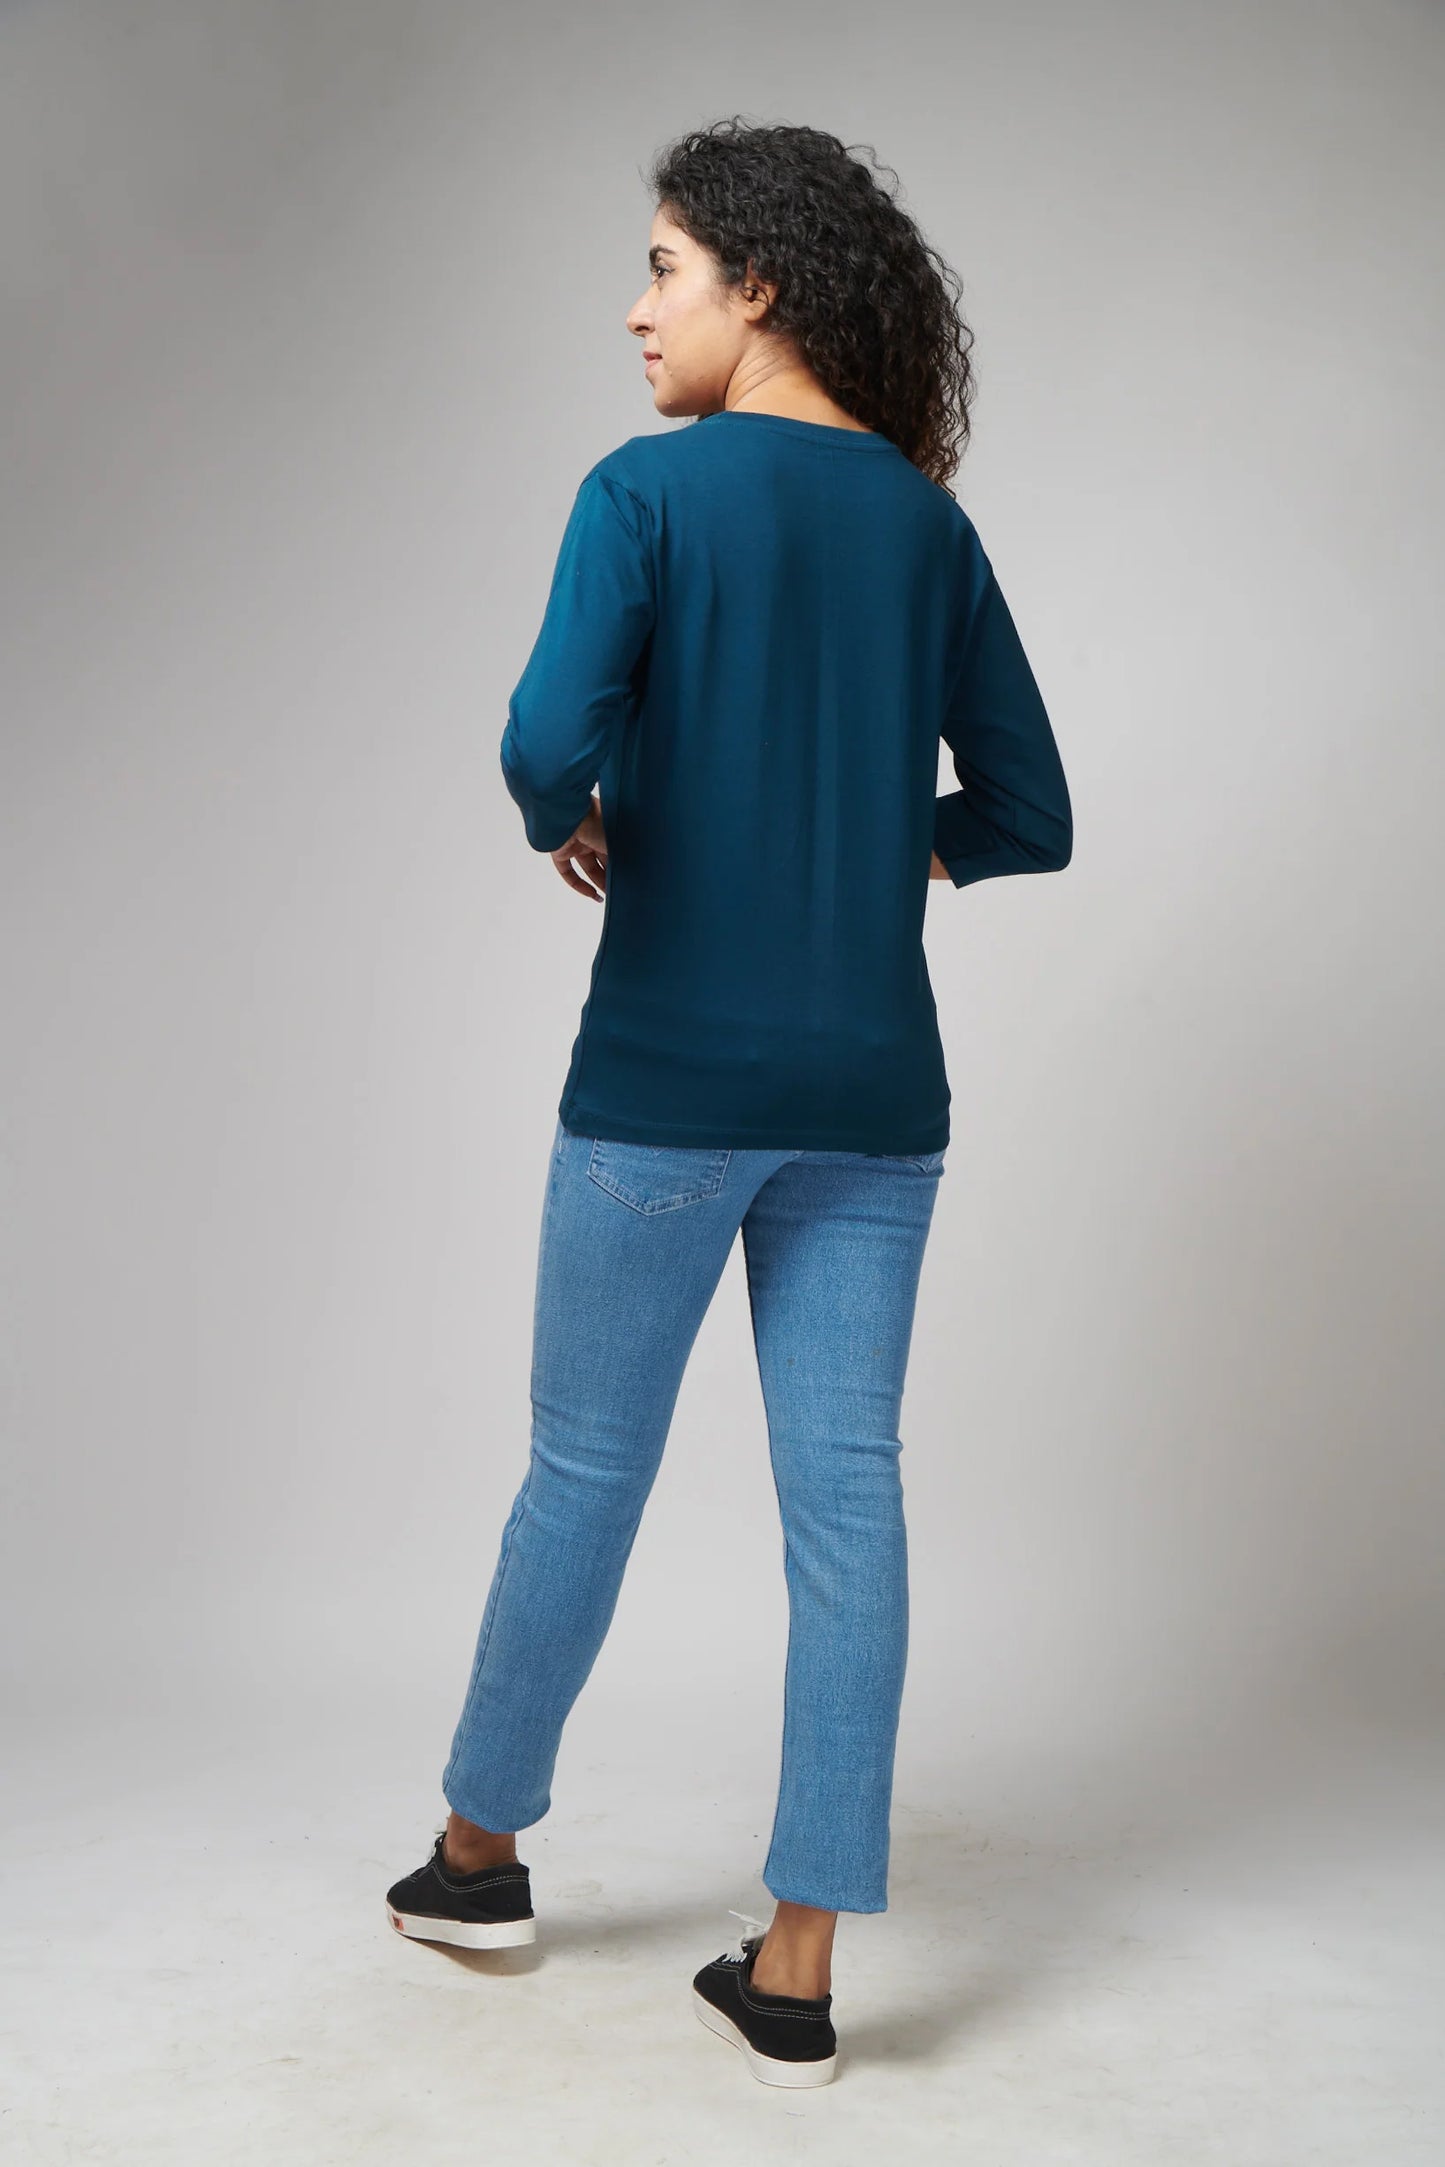 Women's Basic Petroleum Blue Full Sleeves T-Shirt